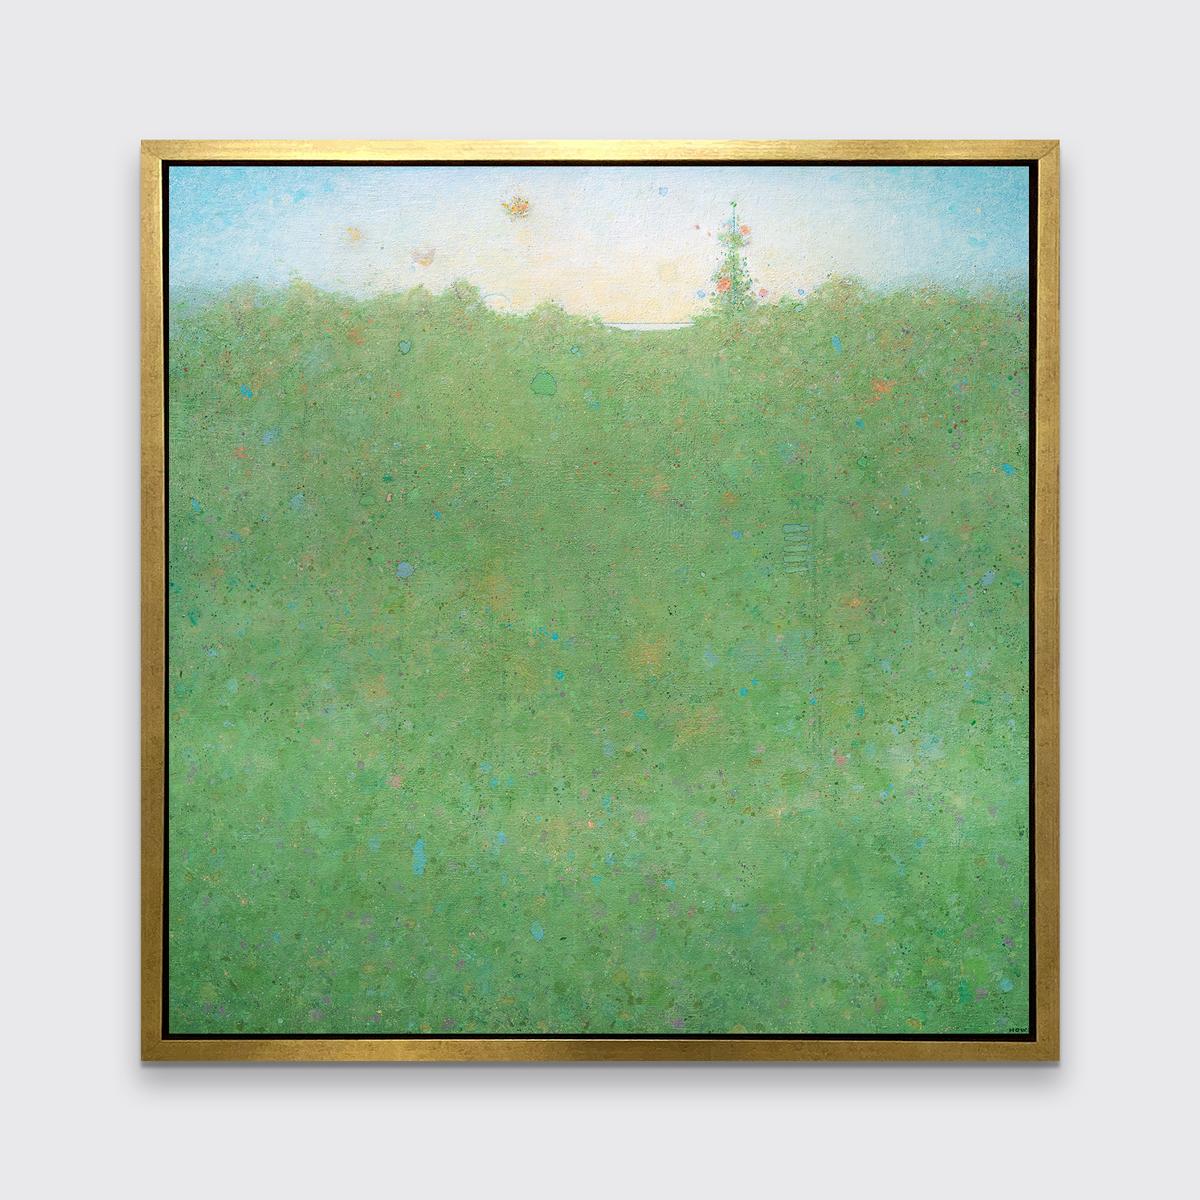 Ce paysage abstrait imprimé en édition limitée par Elwood Howell présente une palette de verts vibrants. Les couleurs orange, bleu et violet accentuent la zone verte de la composition, qui s'étend jusqu'à une ligne d'horizon imparfaite qui rappelle